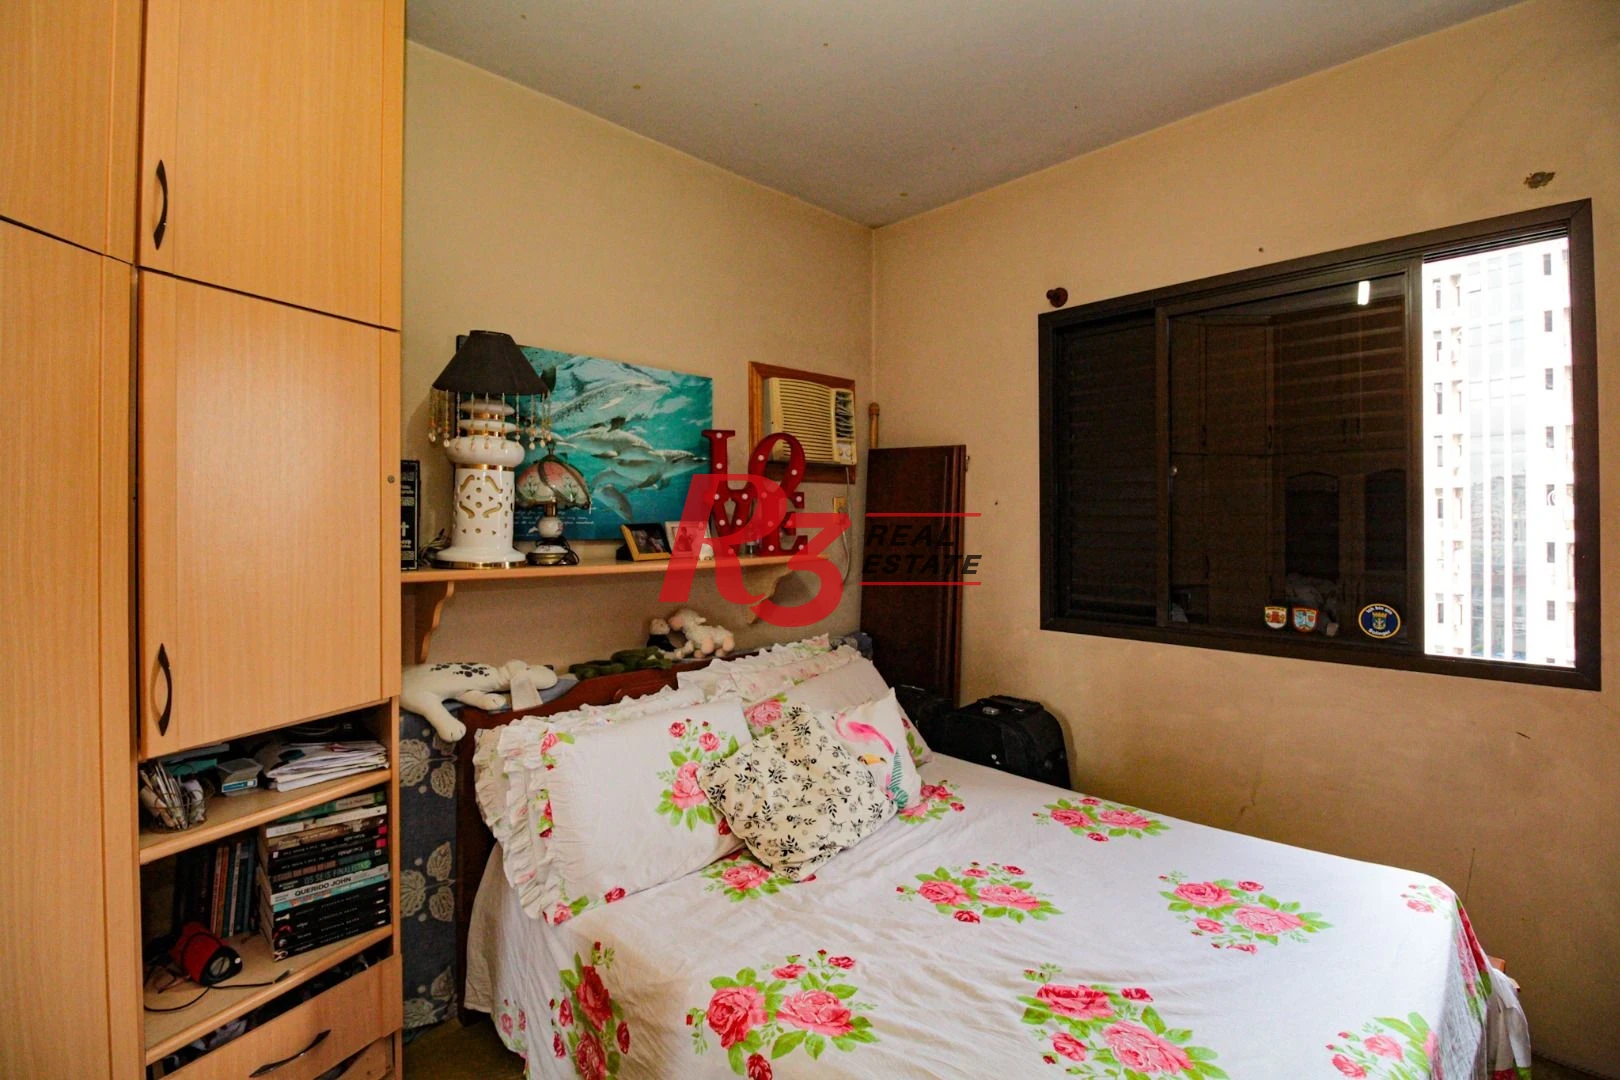 Apartamento para alugar, 55 m² por R$ 3.300,00/mês - Boqueirão - Santos/SP